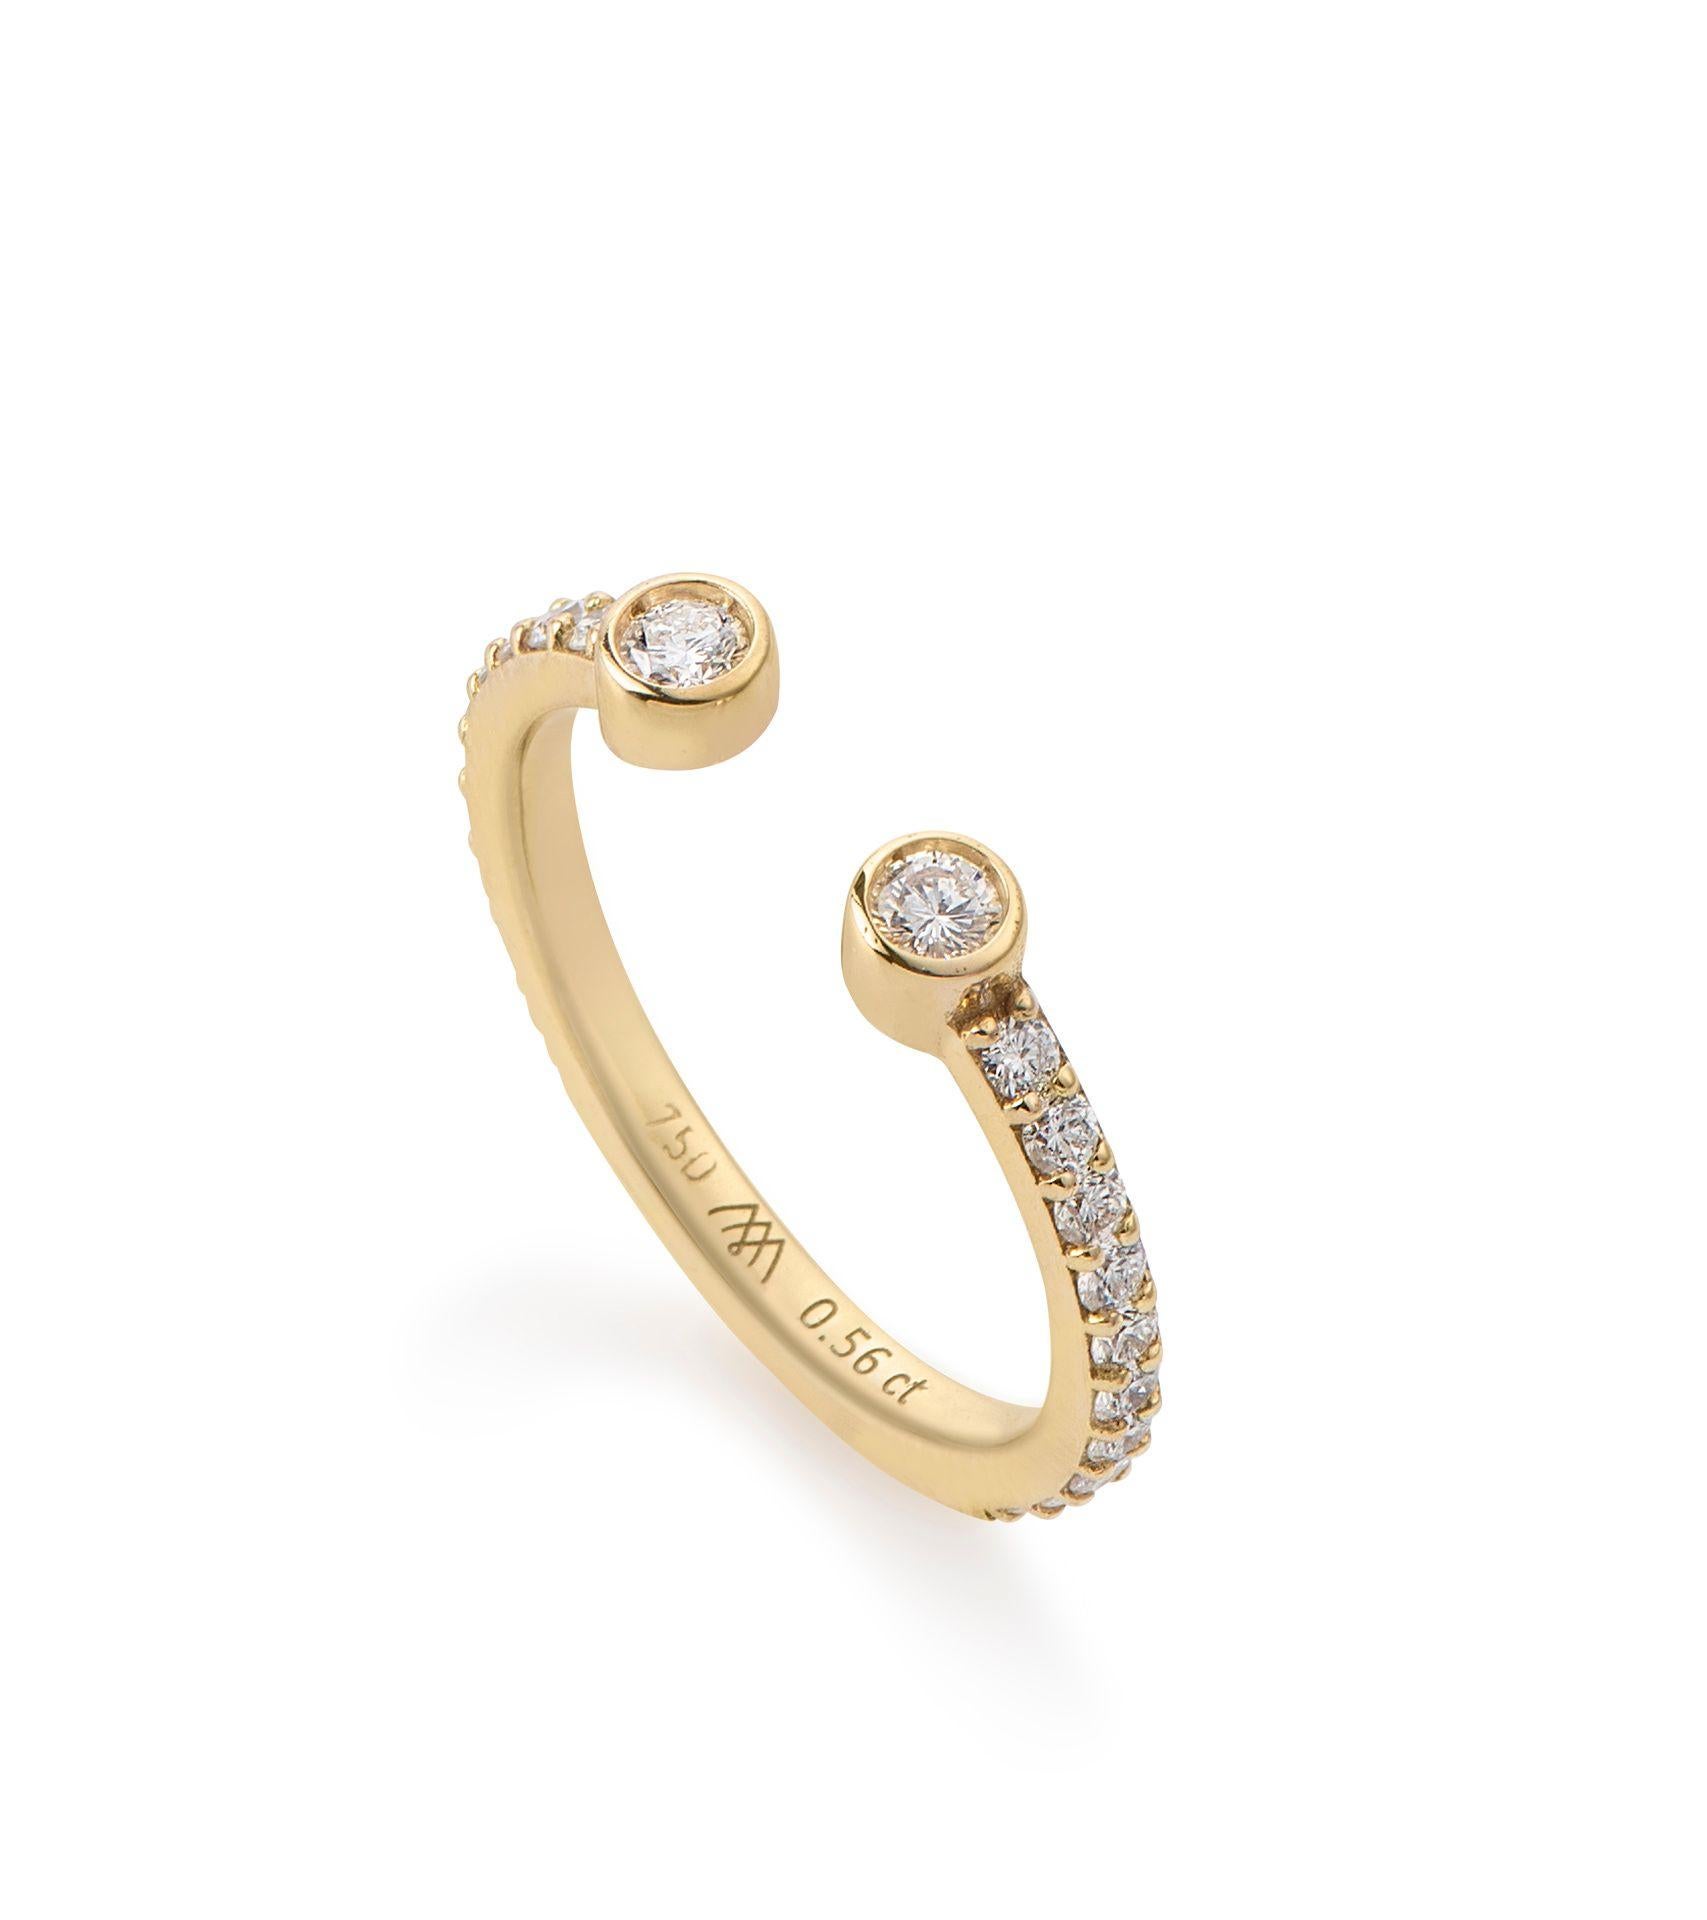 Réalisée en or jaune 18 carats, la bague Eternal Diamond  comporte deux diamants naturels sertis sur les pointes de son design ouvert et tracé de diamants scintillants le long de la bande (la bague est sertie de diamants jusqu'aux 3/4 de l'anneau,